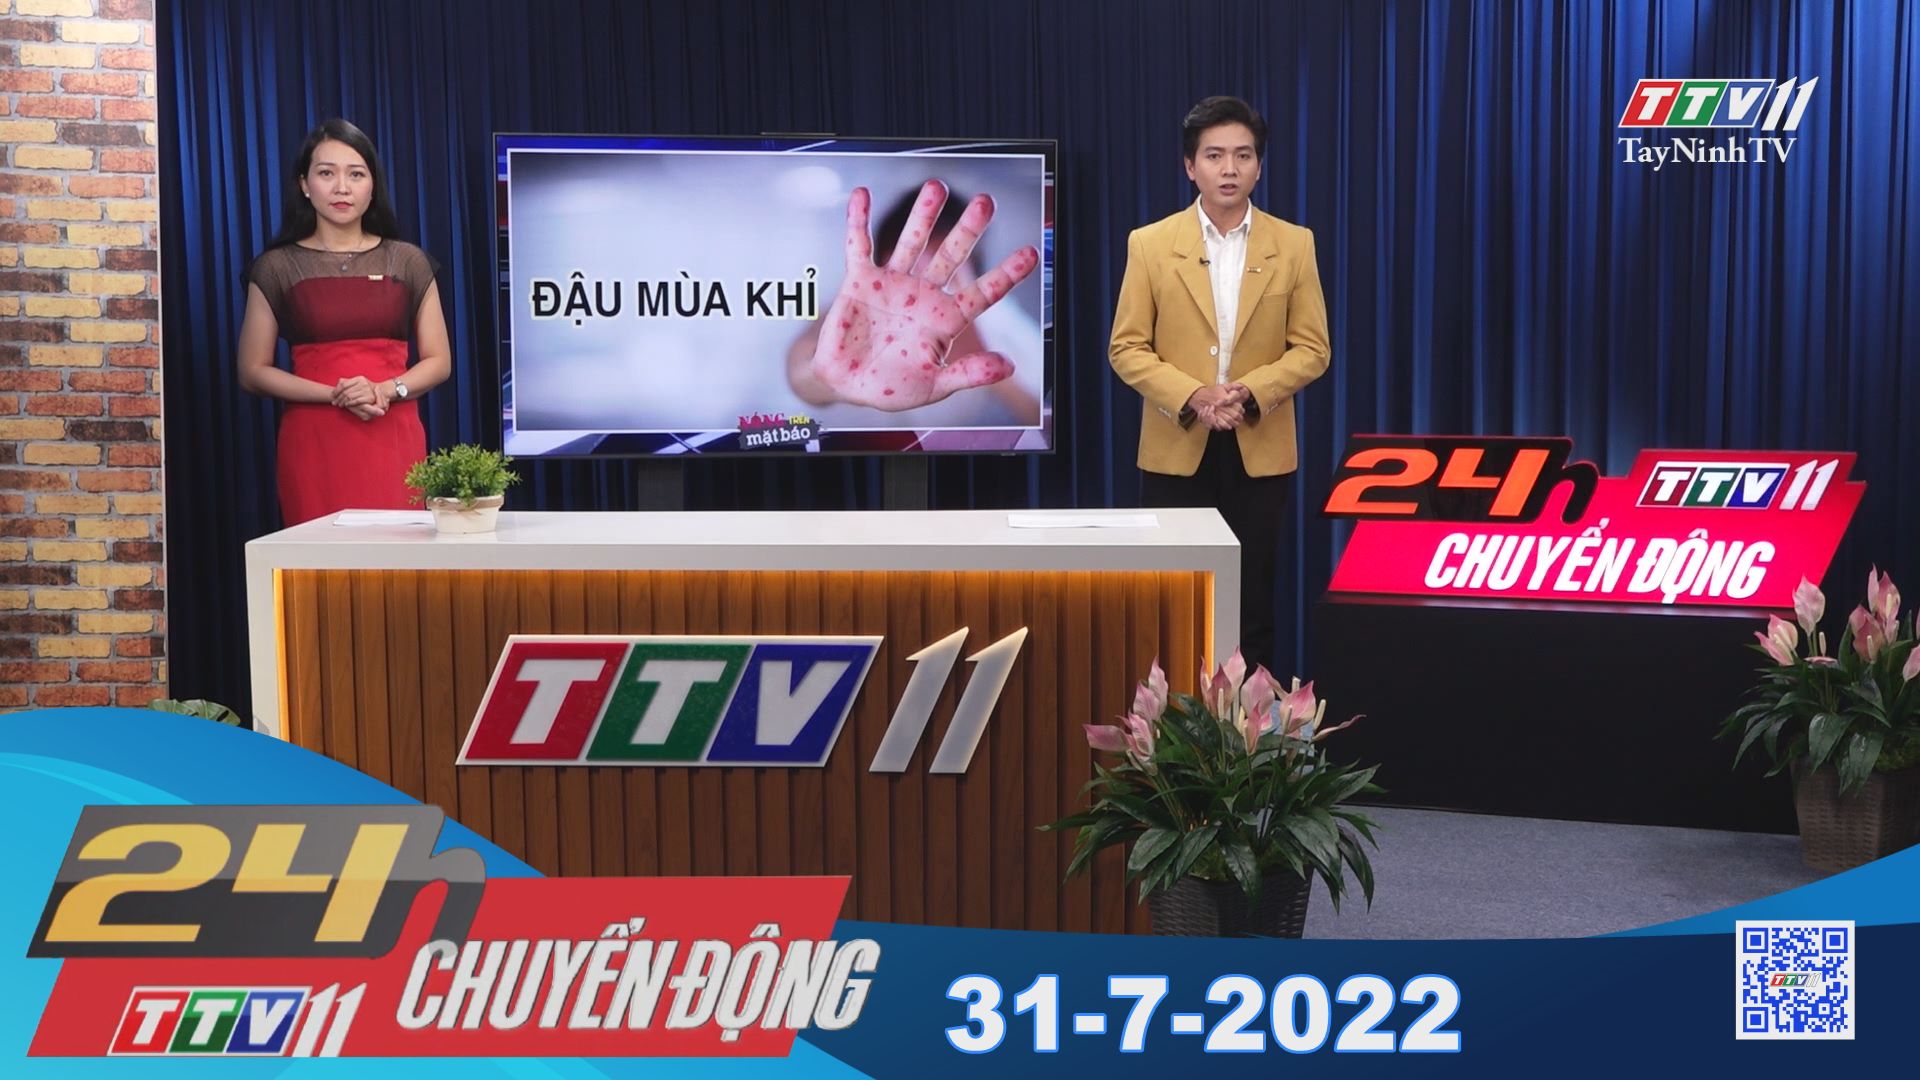 24h Chuyển động 31-7-2022 | Tin tức hôm nay | TayNinhTV